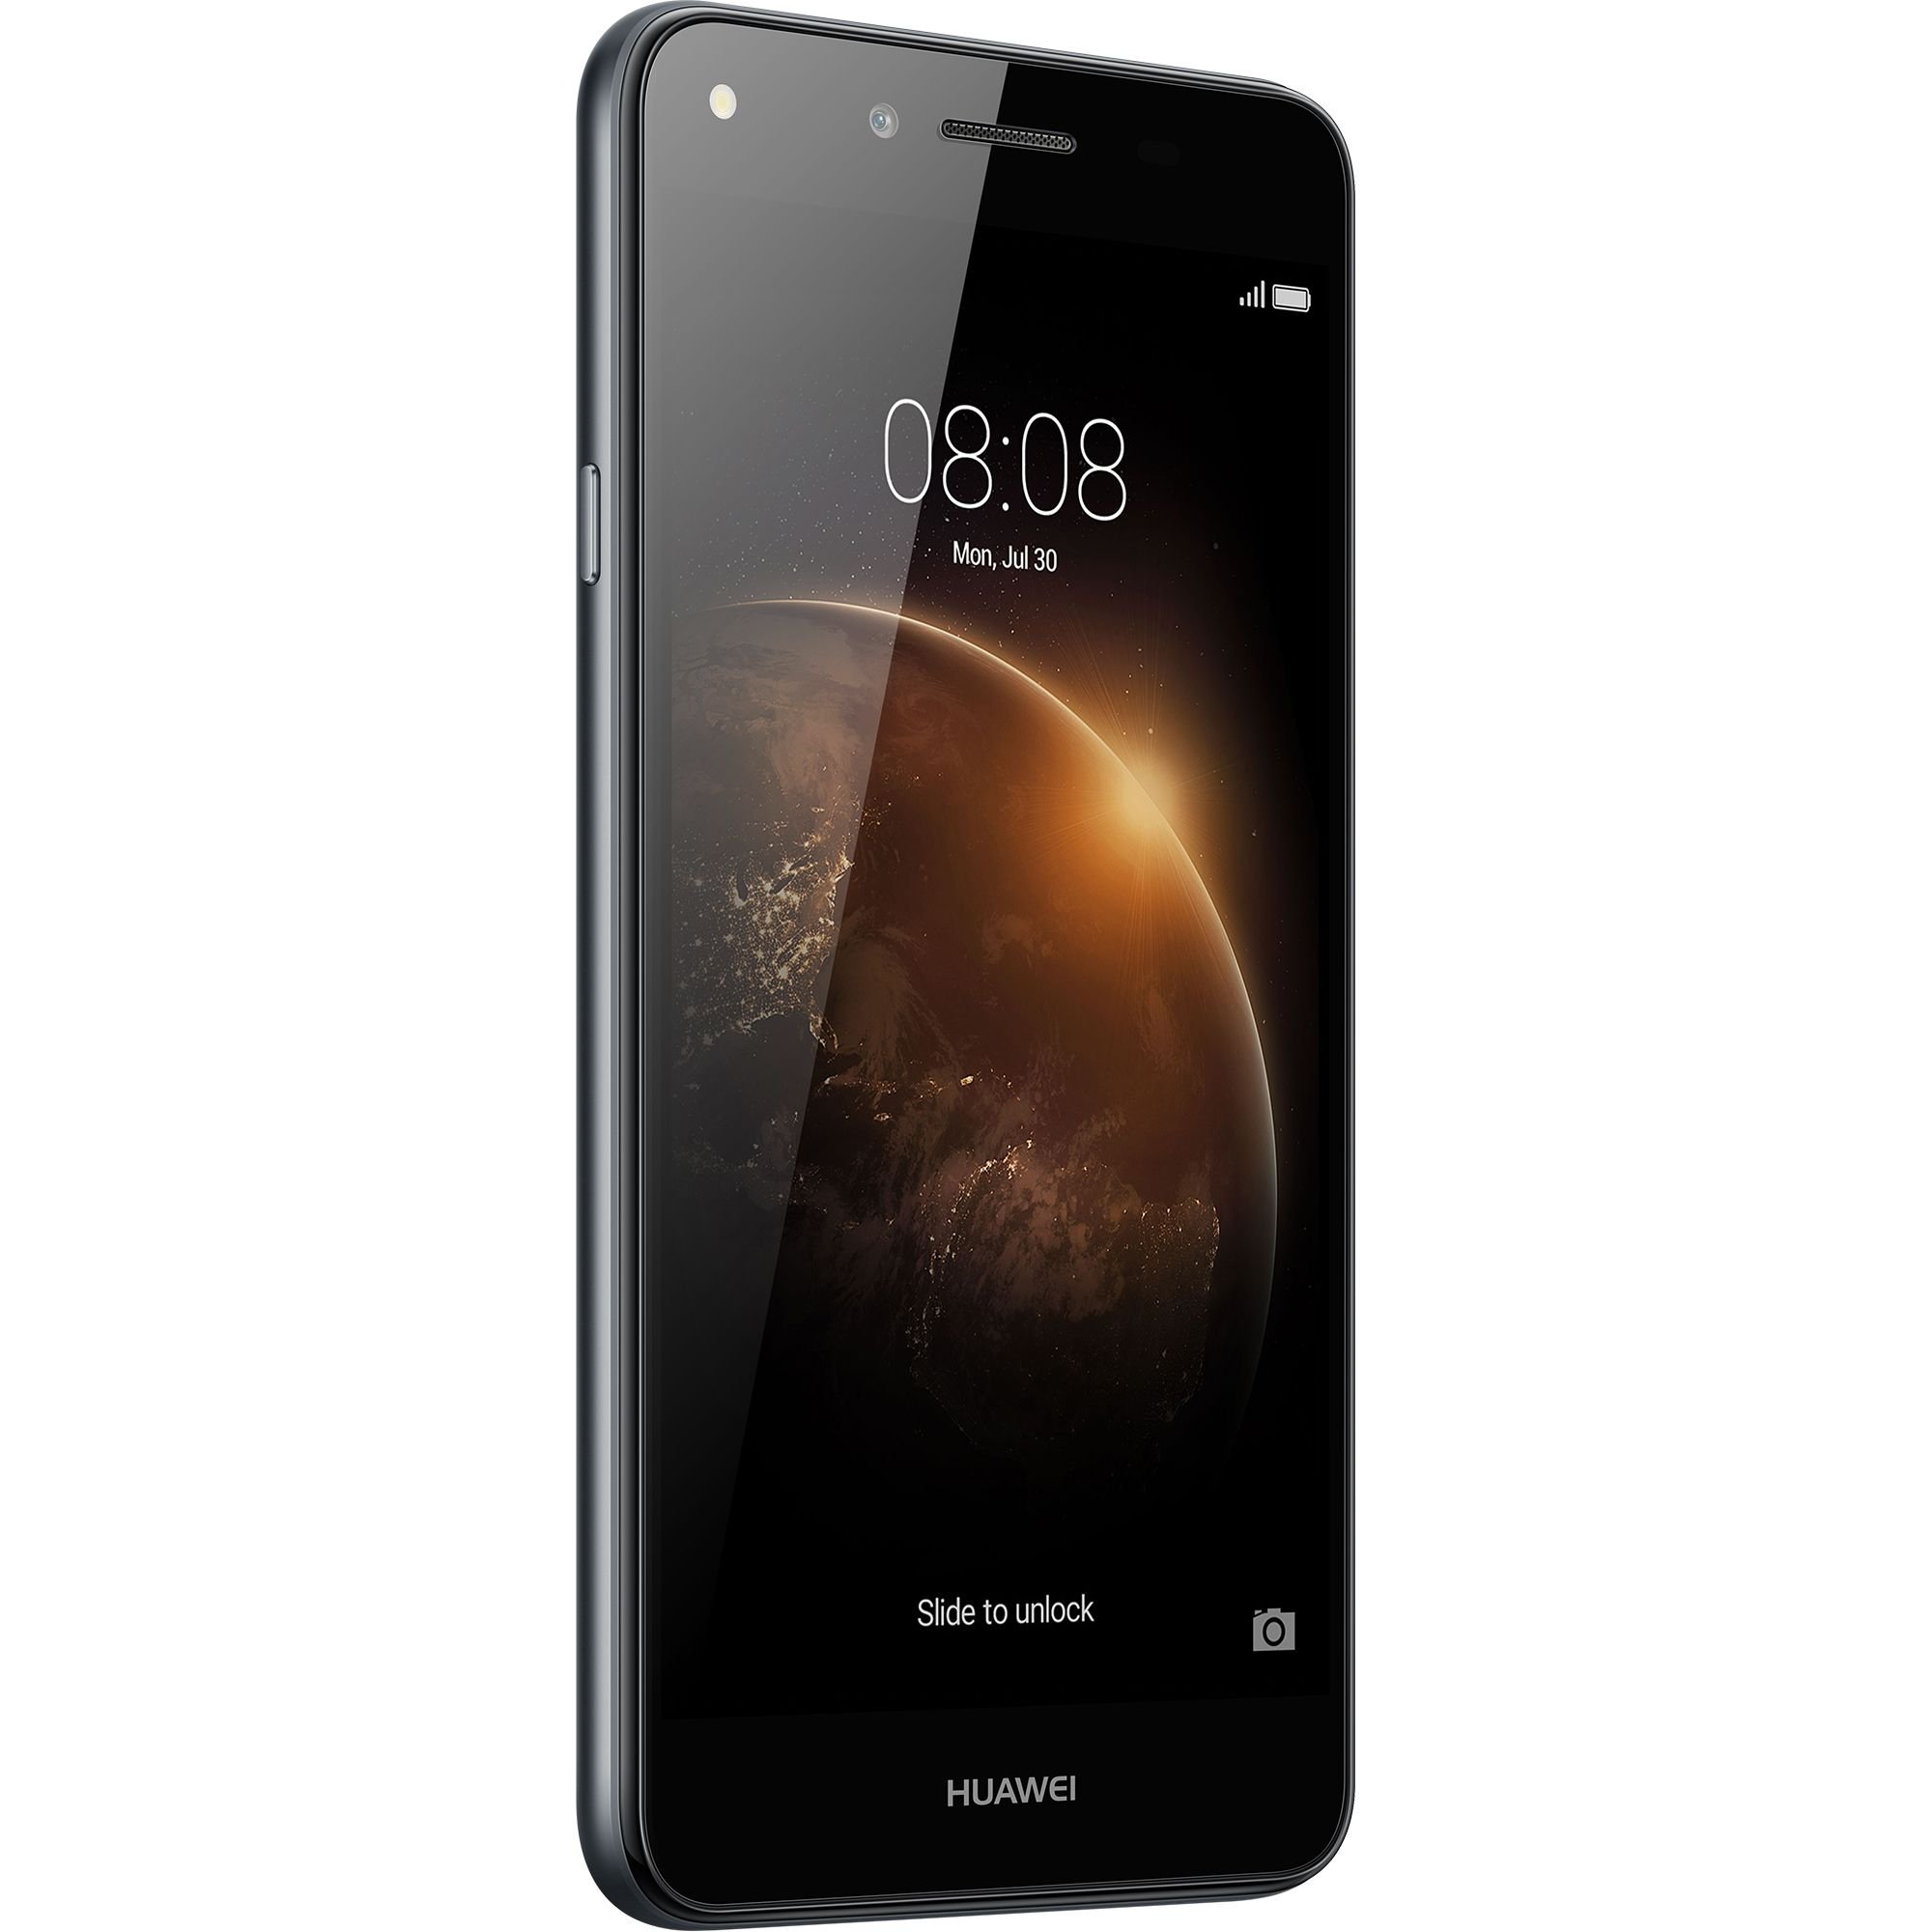 leeuwerik Coördineren Laan Huawei Y6II Compact specs, review, release date - PhonesData